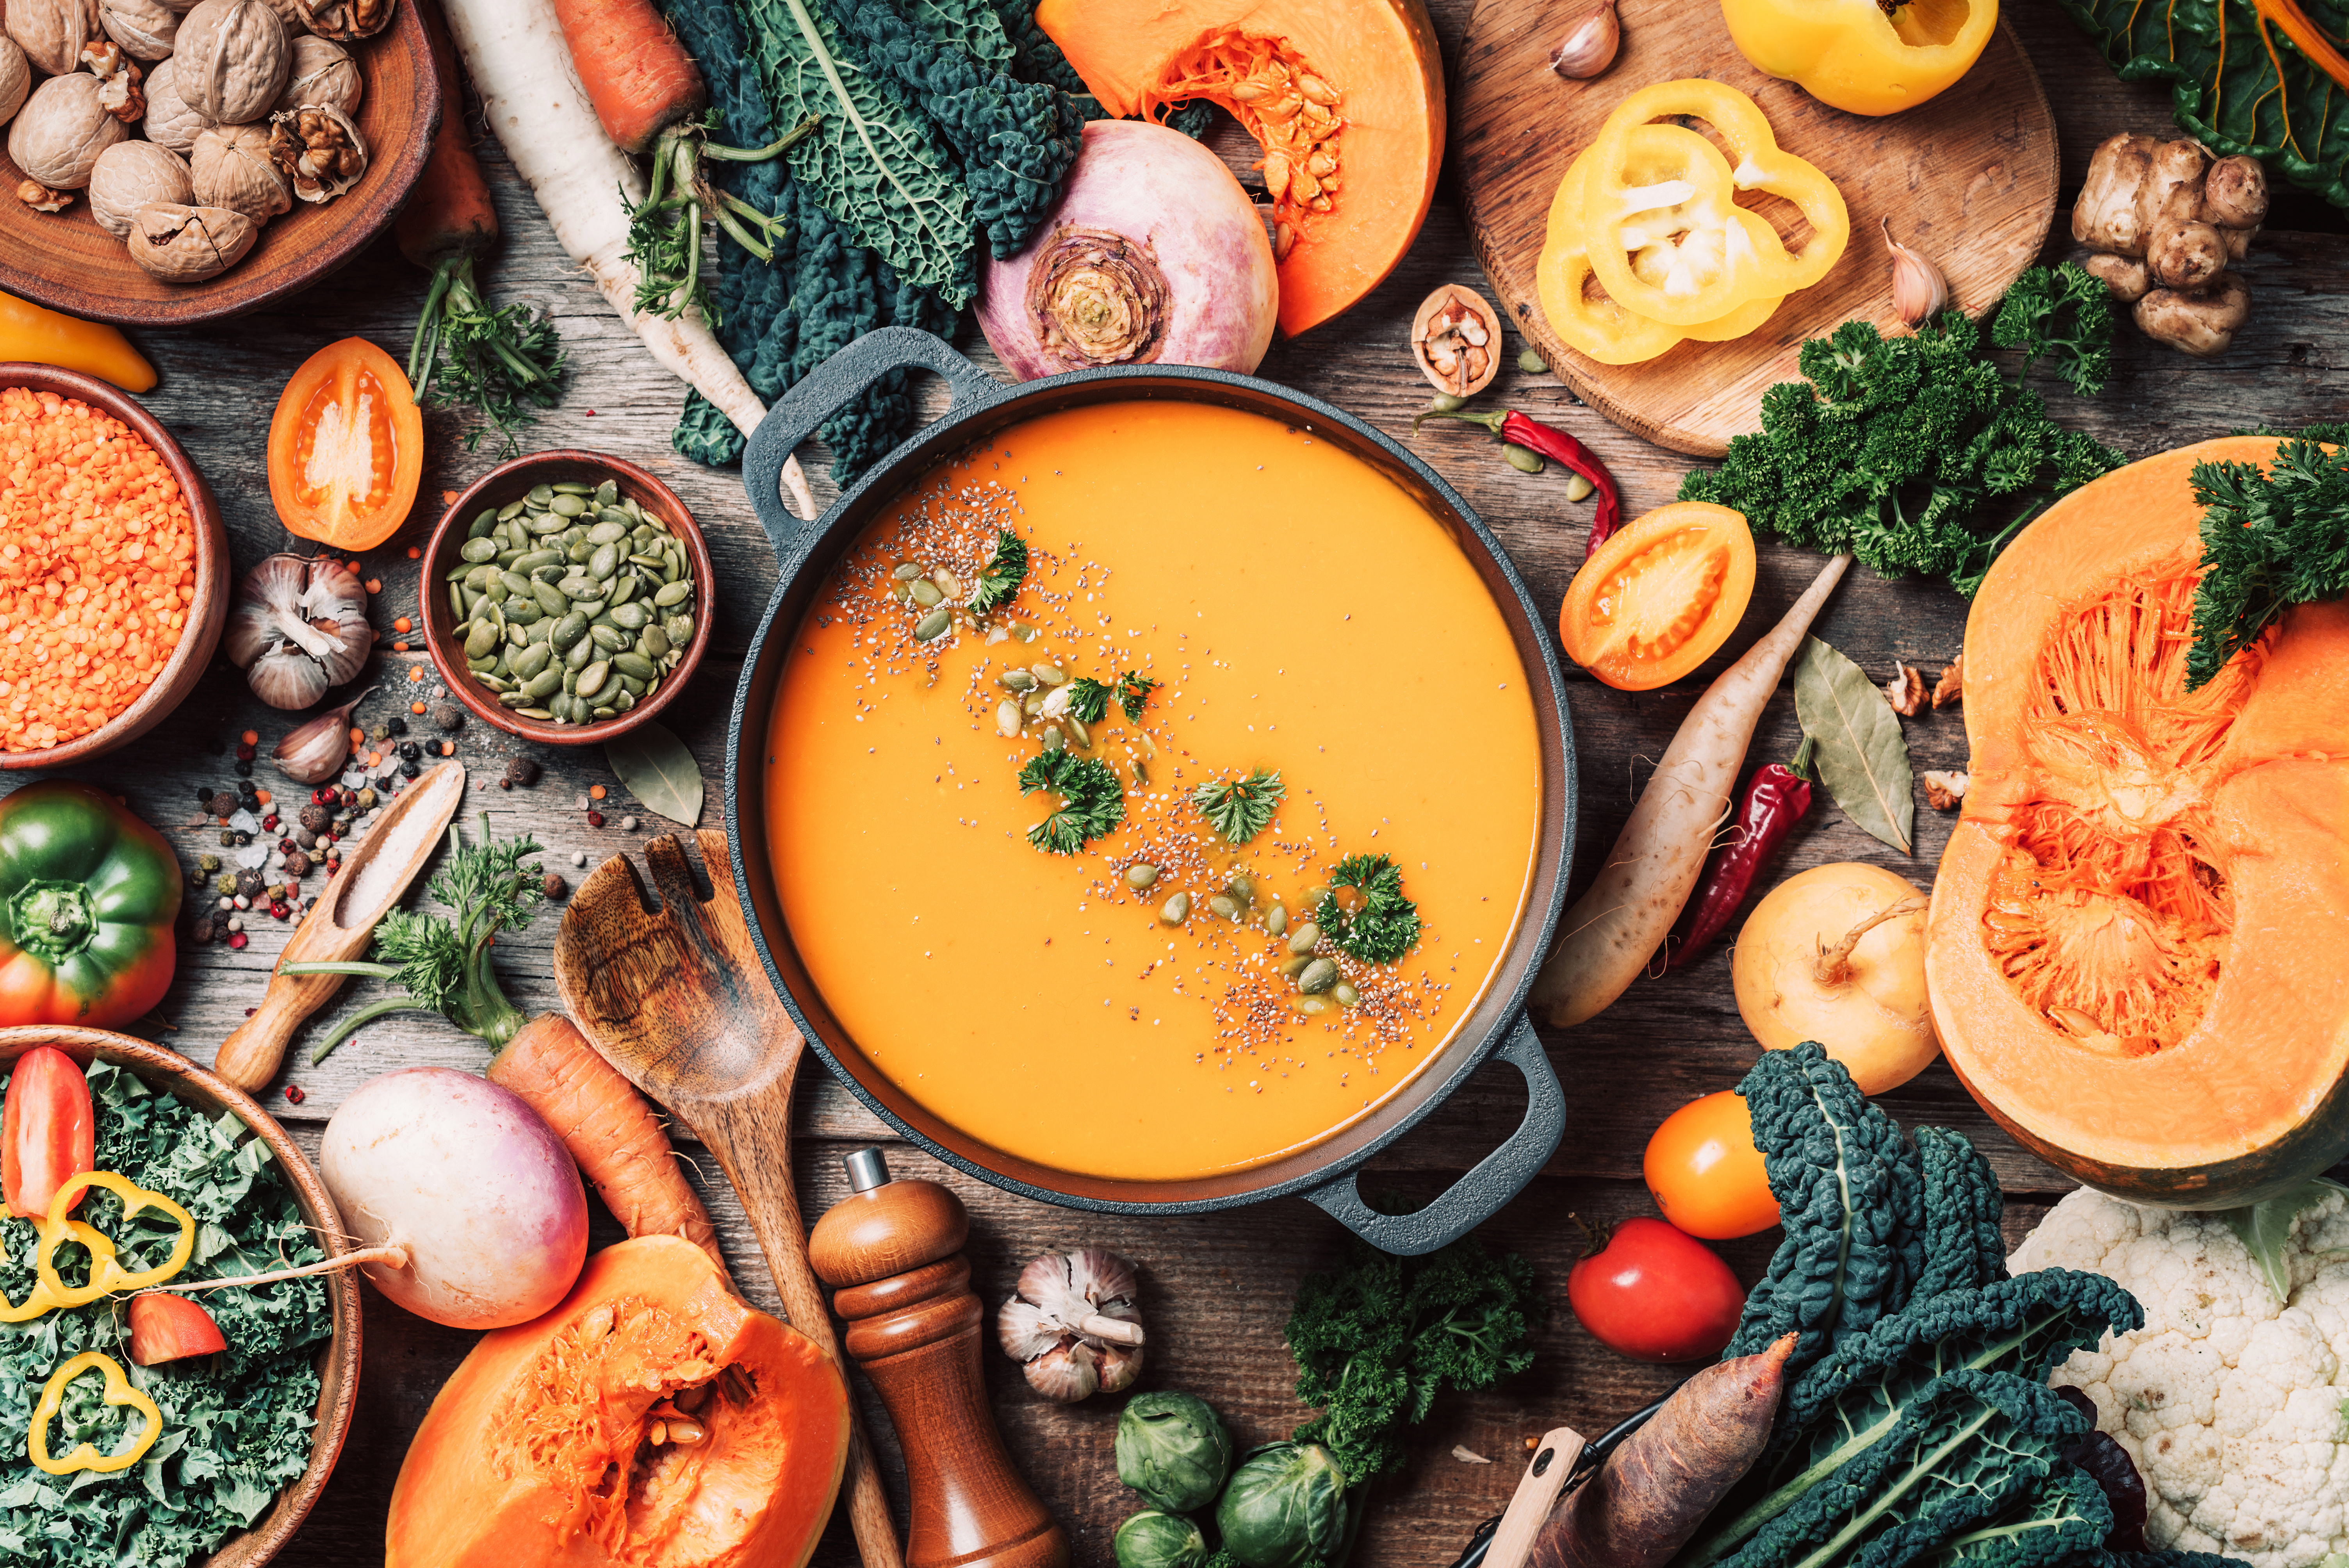 Herbstliches Gemüse: verschiedene Kohlsorten, Karotten, Paprika, Linsen, Kürbis. In der Mitte ist ein Topf mit einer Suppe zu sehen und das Gemüse liegt darum herum auf dem Tisch